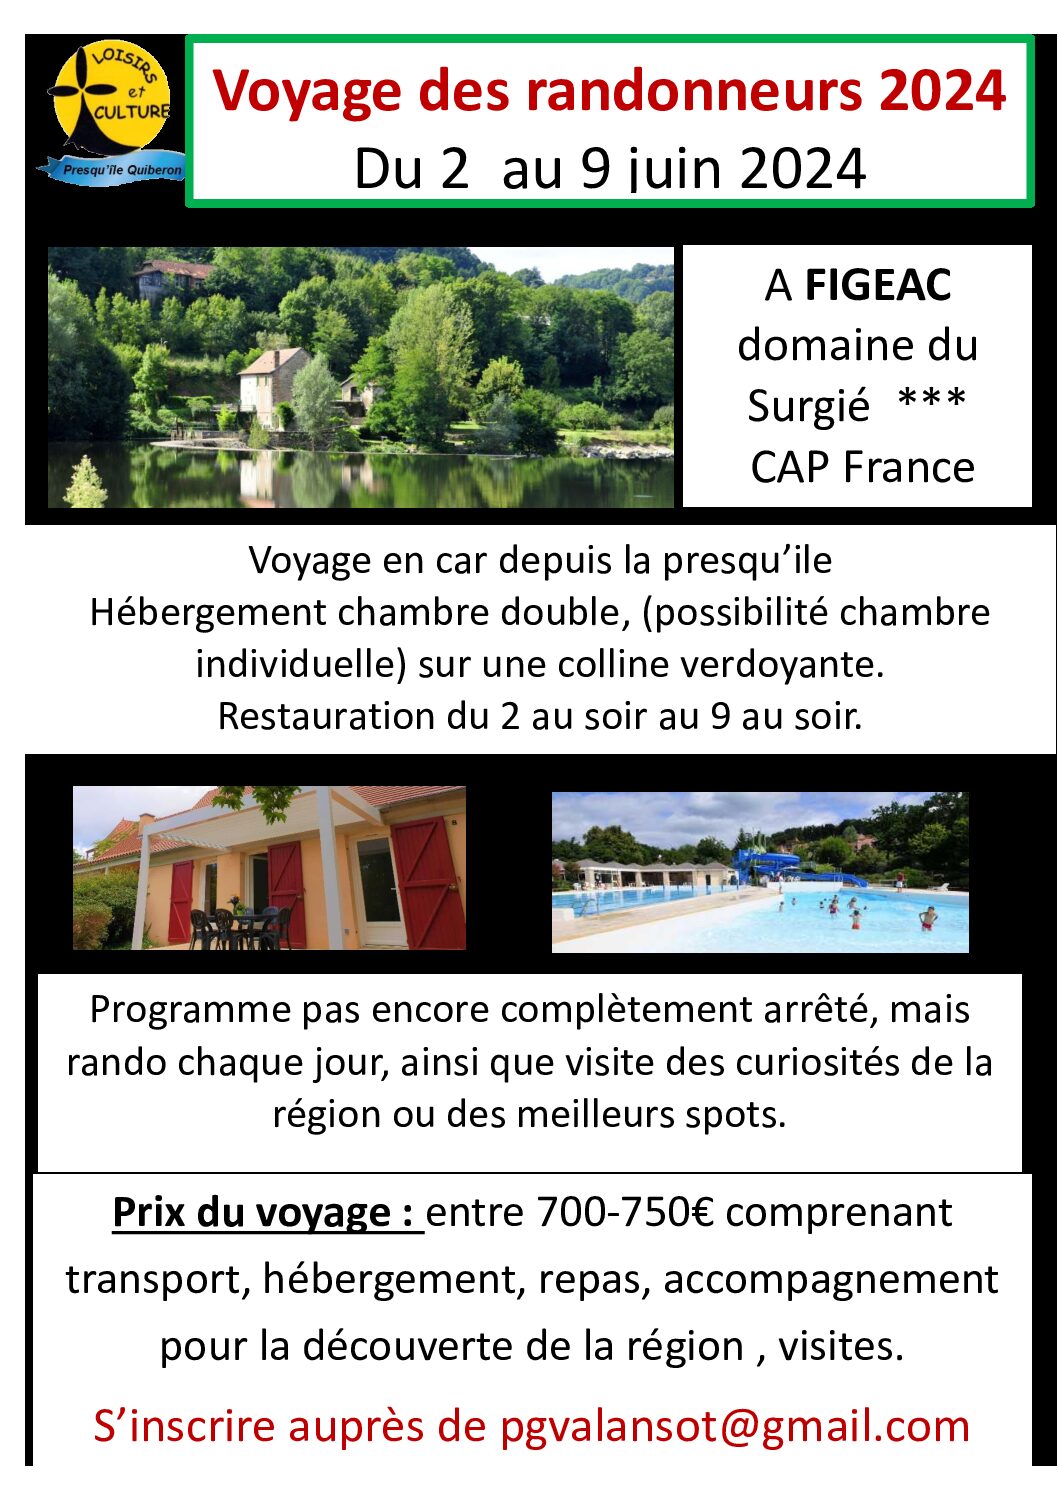 Voyage à Figéac du 2 au 9 Juin 2024